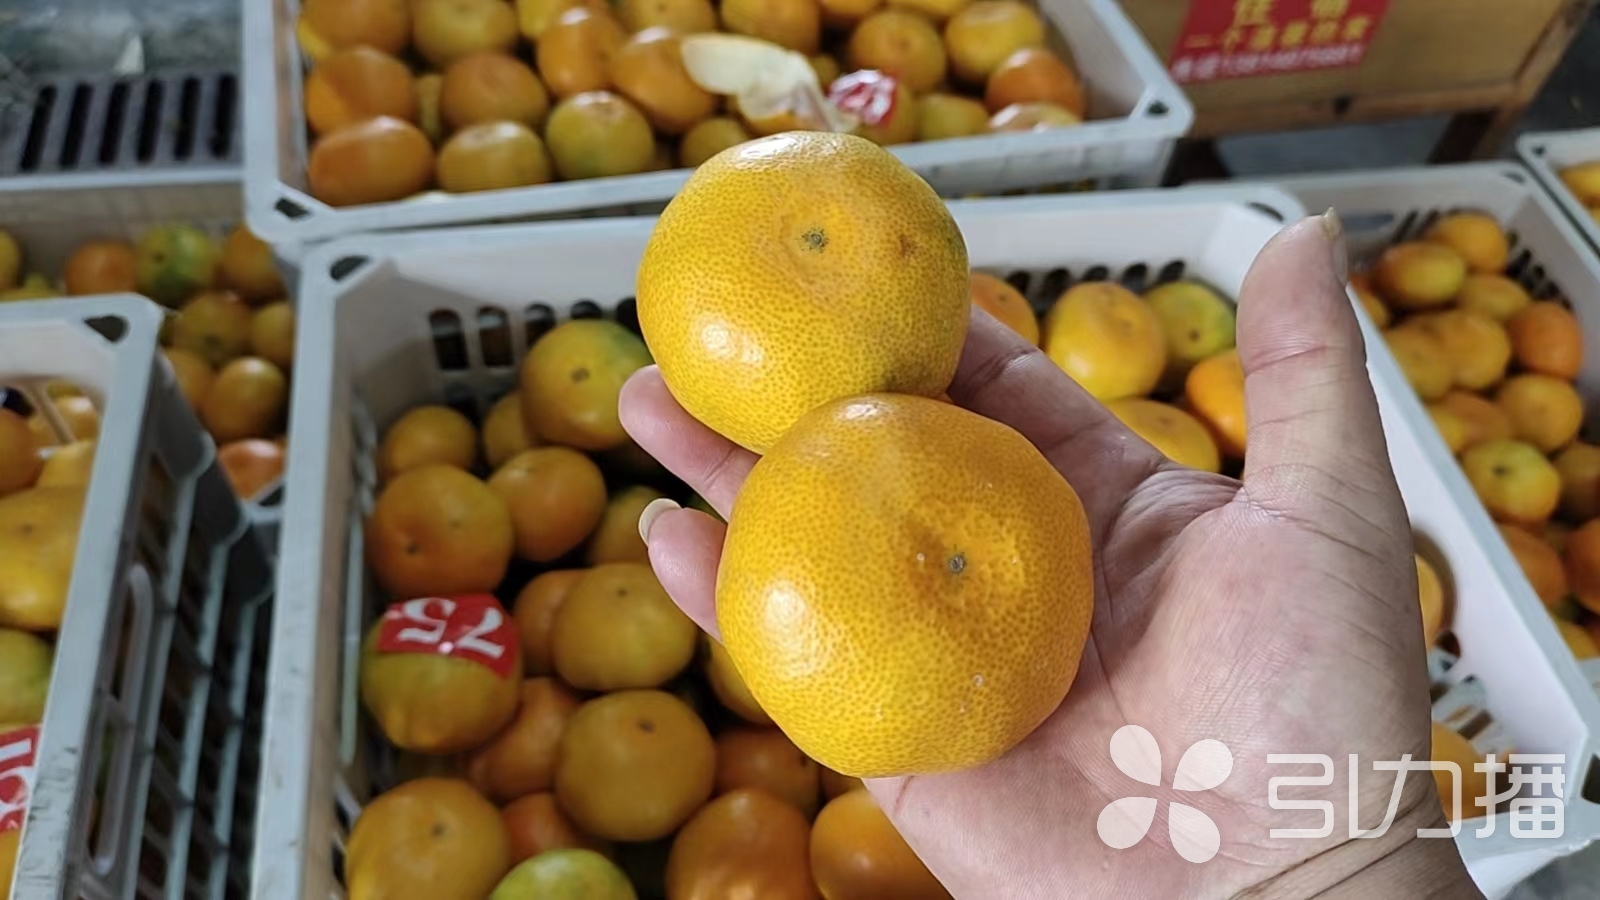 秋季时令水果大量上市 橘子日上市量达到220吨